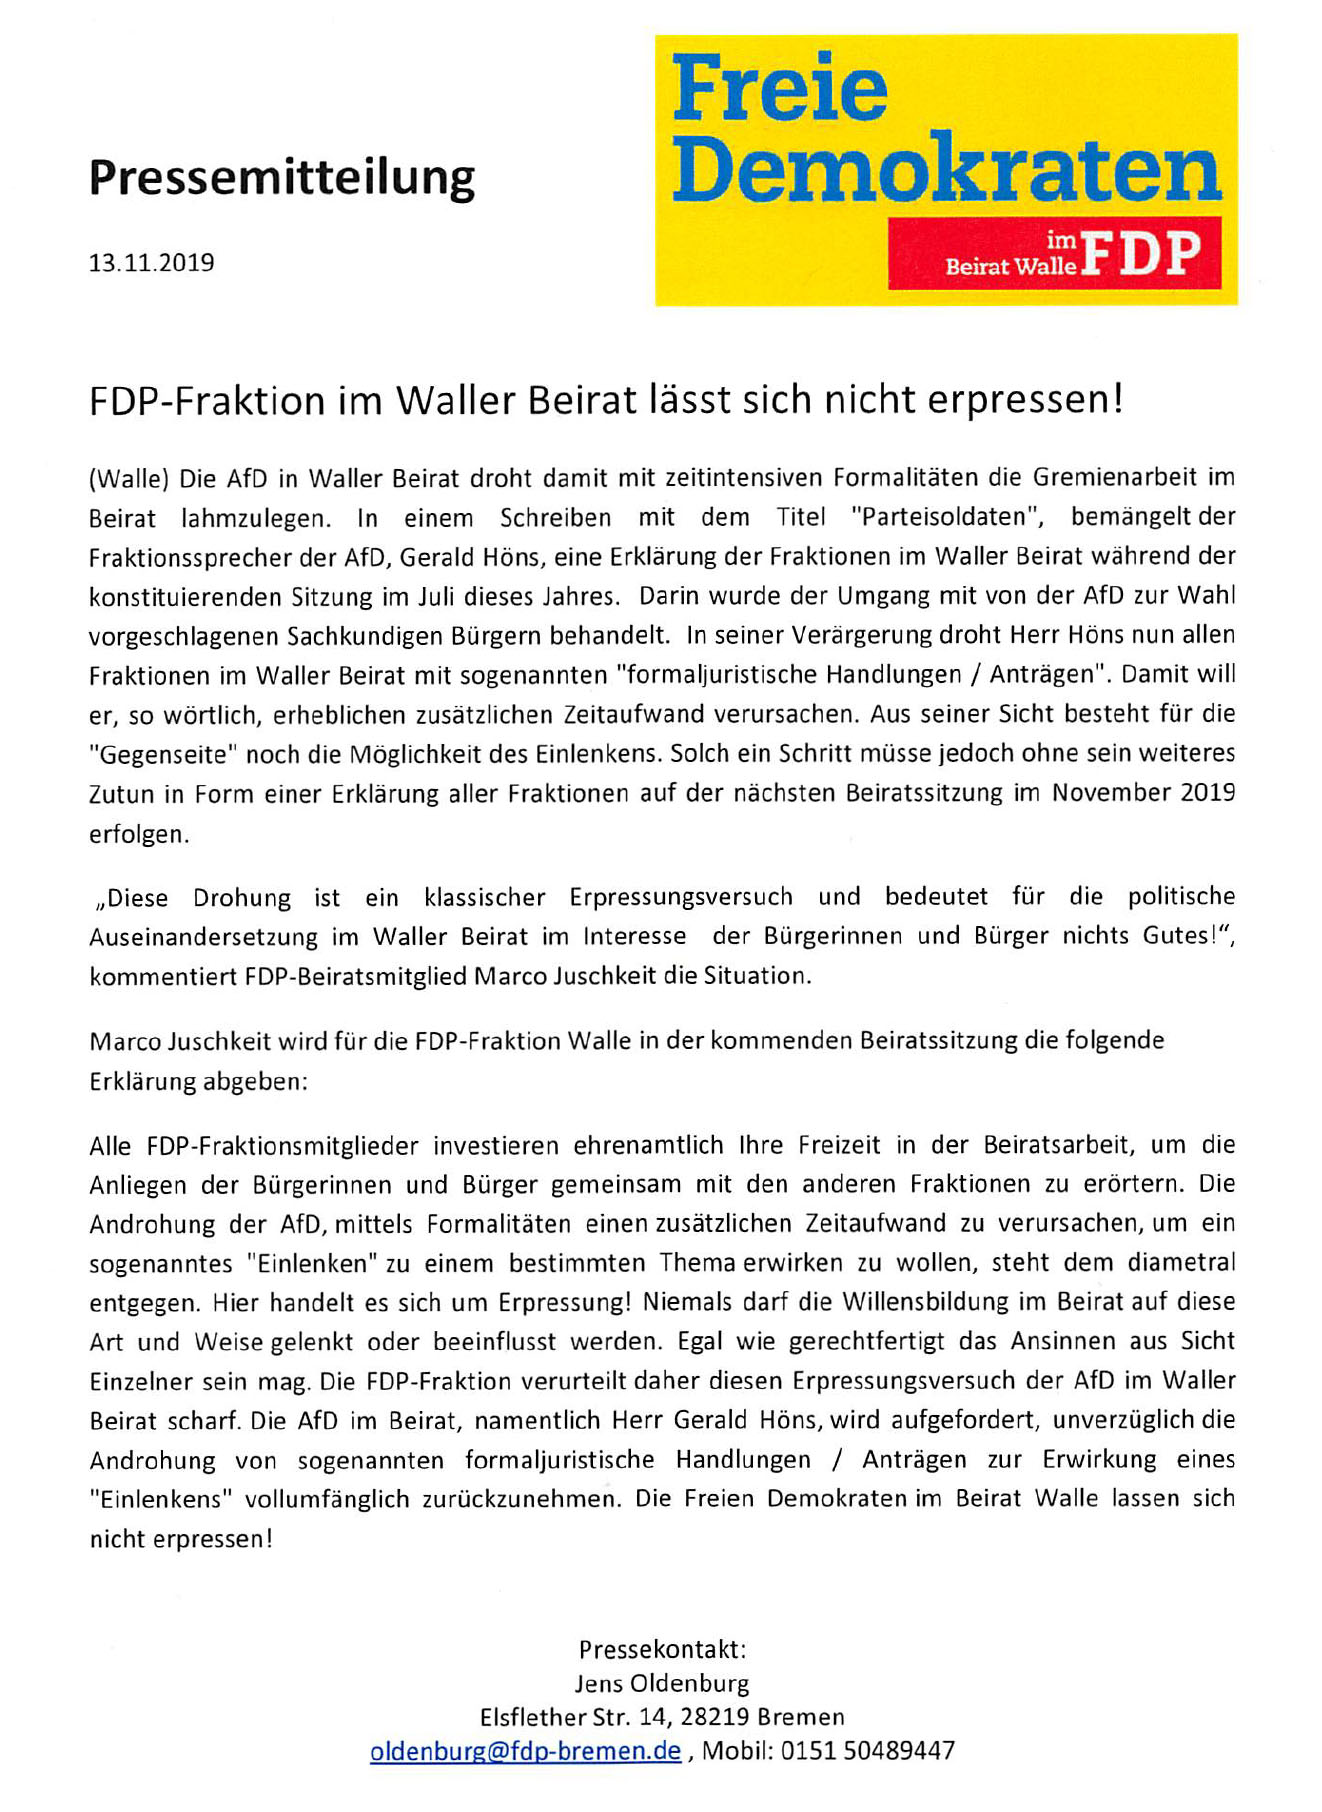 FDP-Pressemitteilung